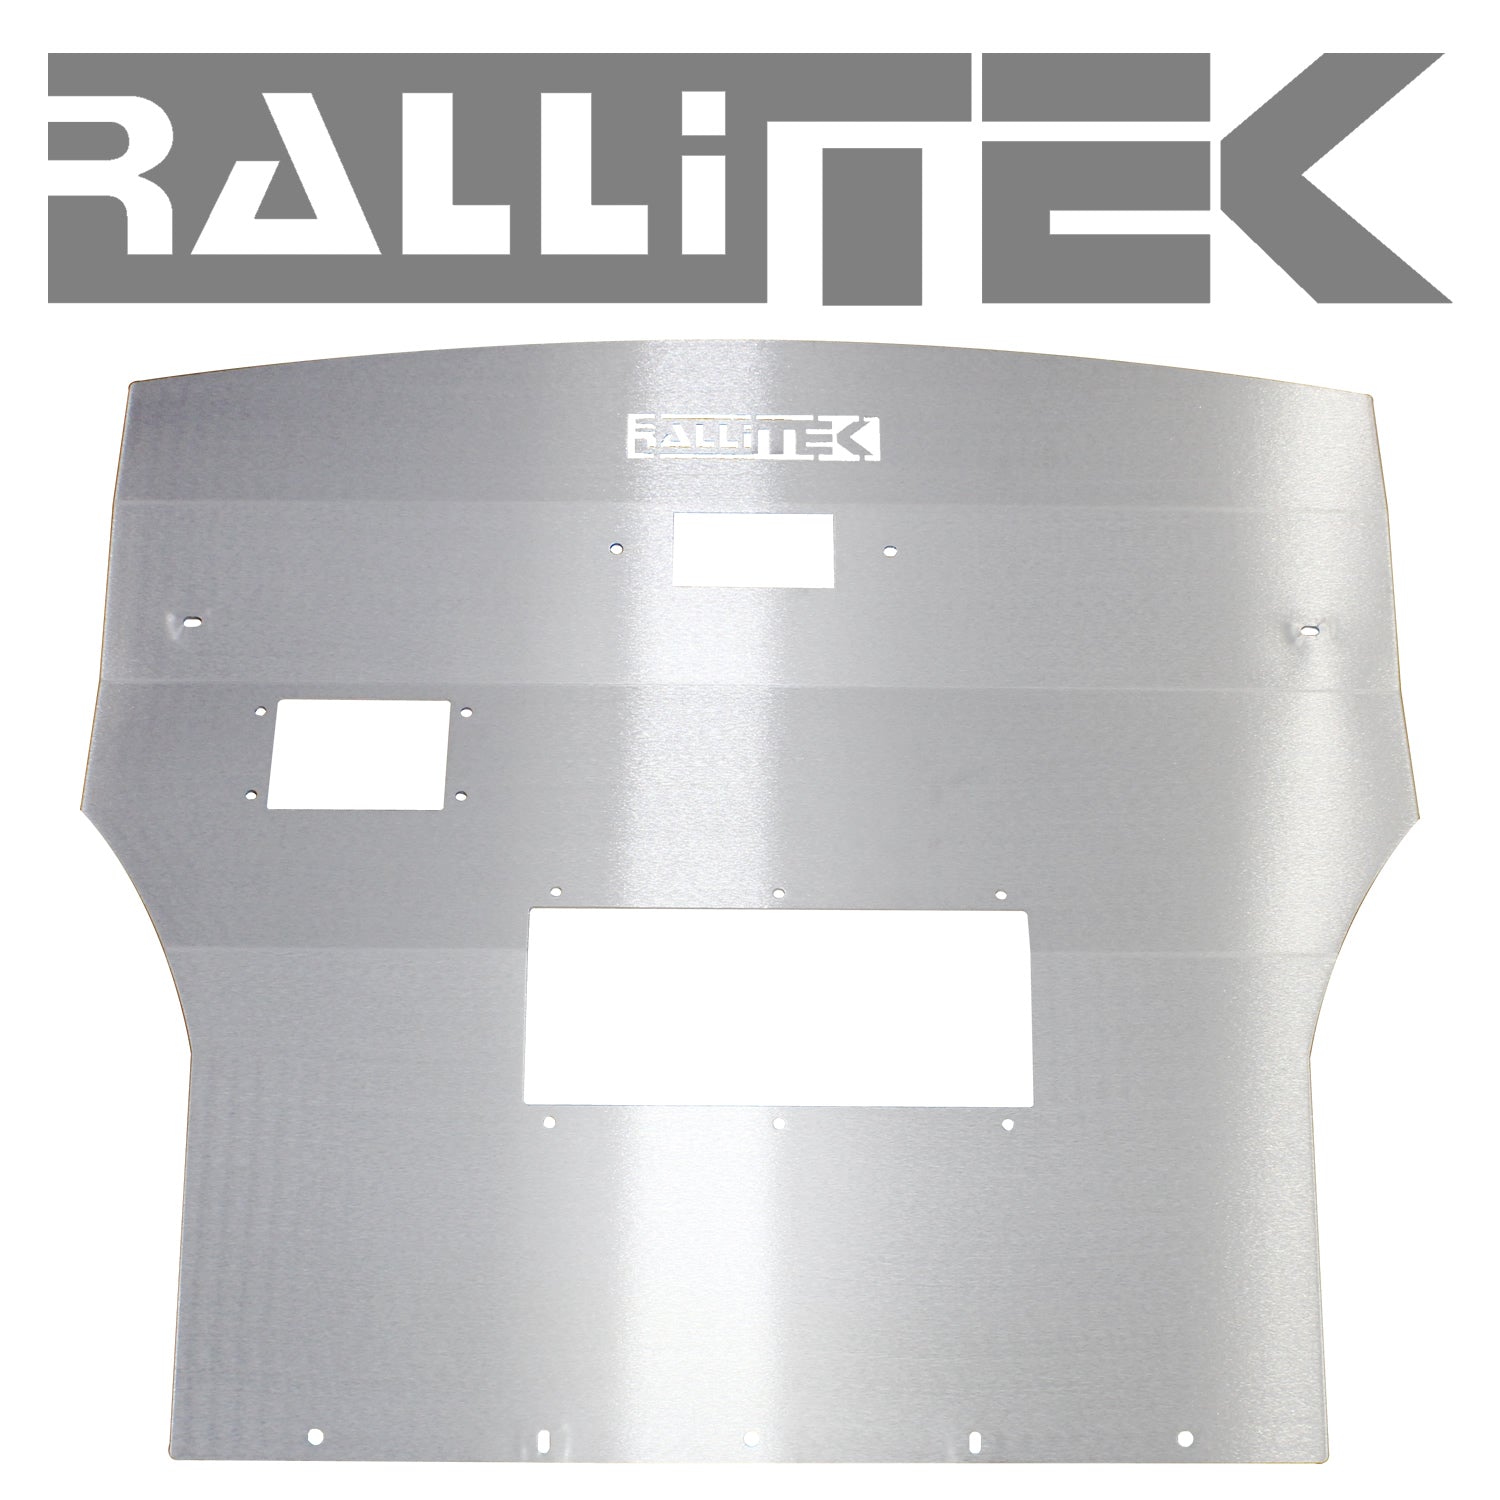 RalliTEK Front Skid Plate & Transmission Skid Plate Kit - Outback 2015-2019